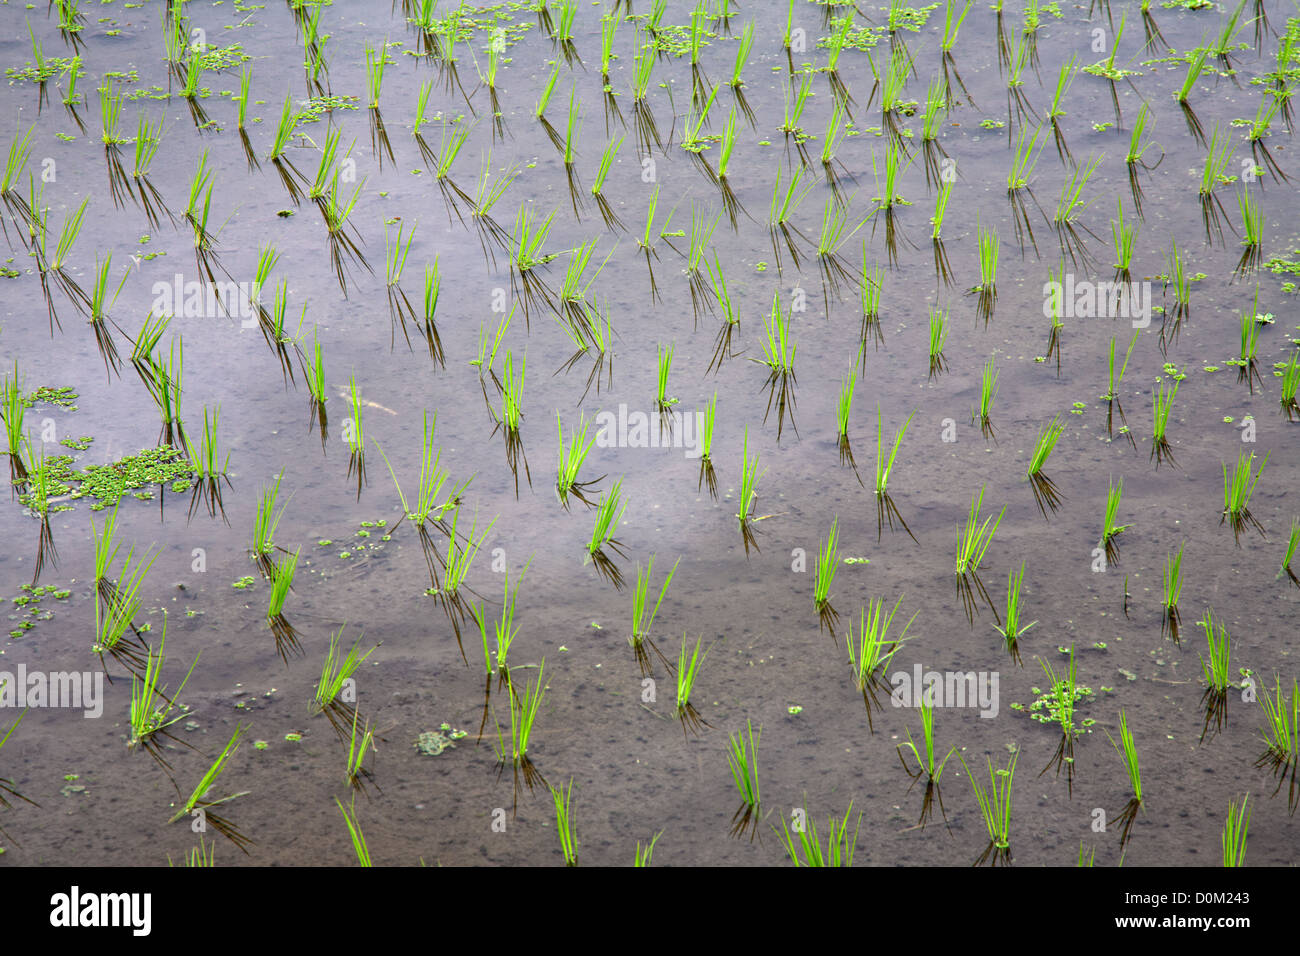 Las plántulas de arroz en agua en los campos de arroz, Bali, Indonesia Foto de stock